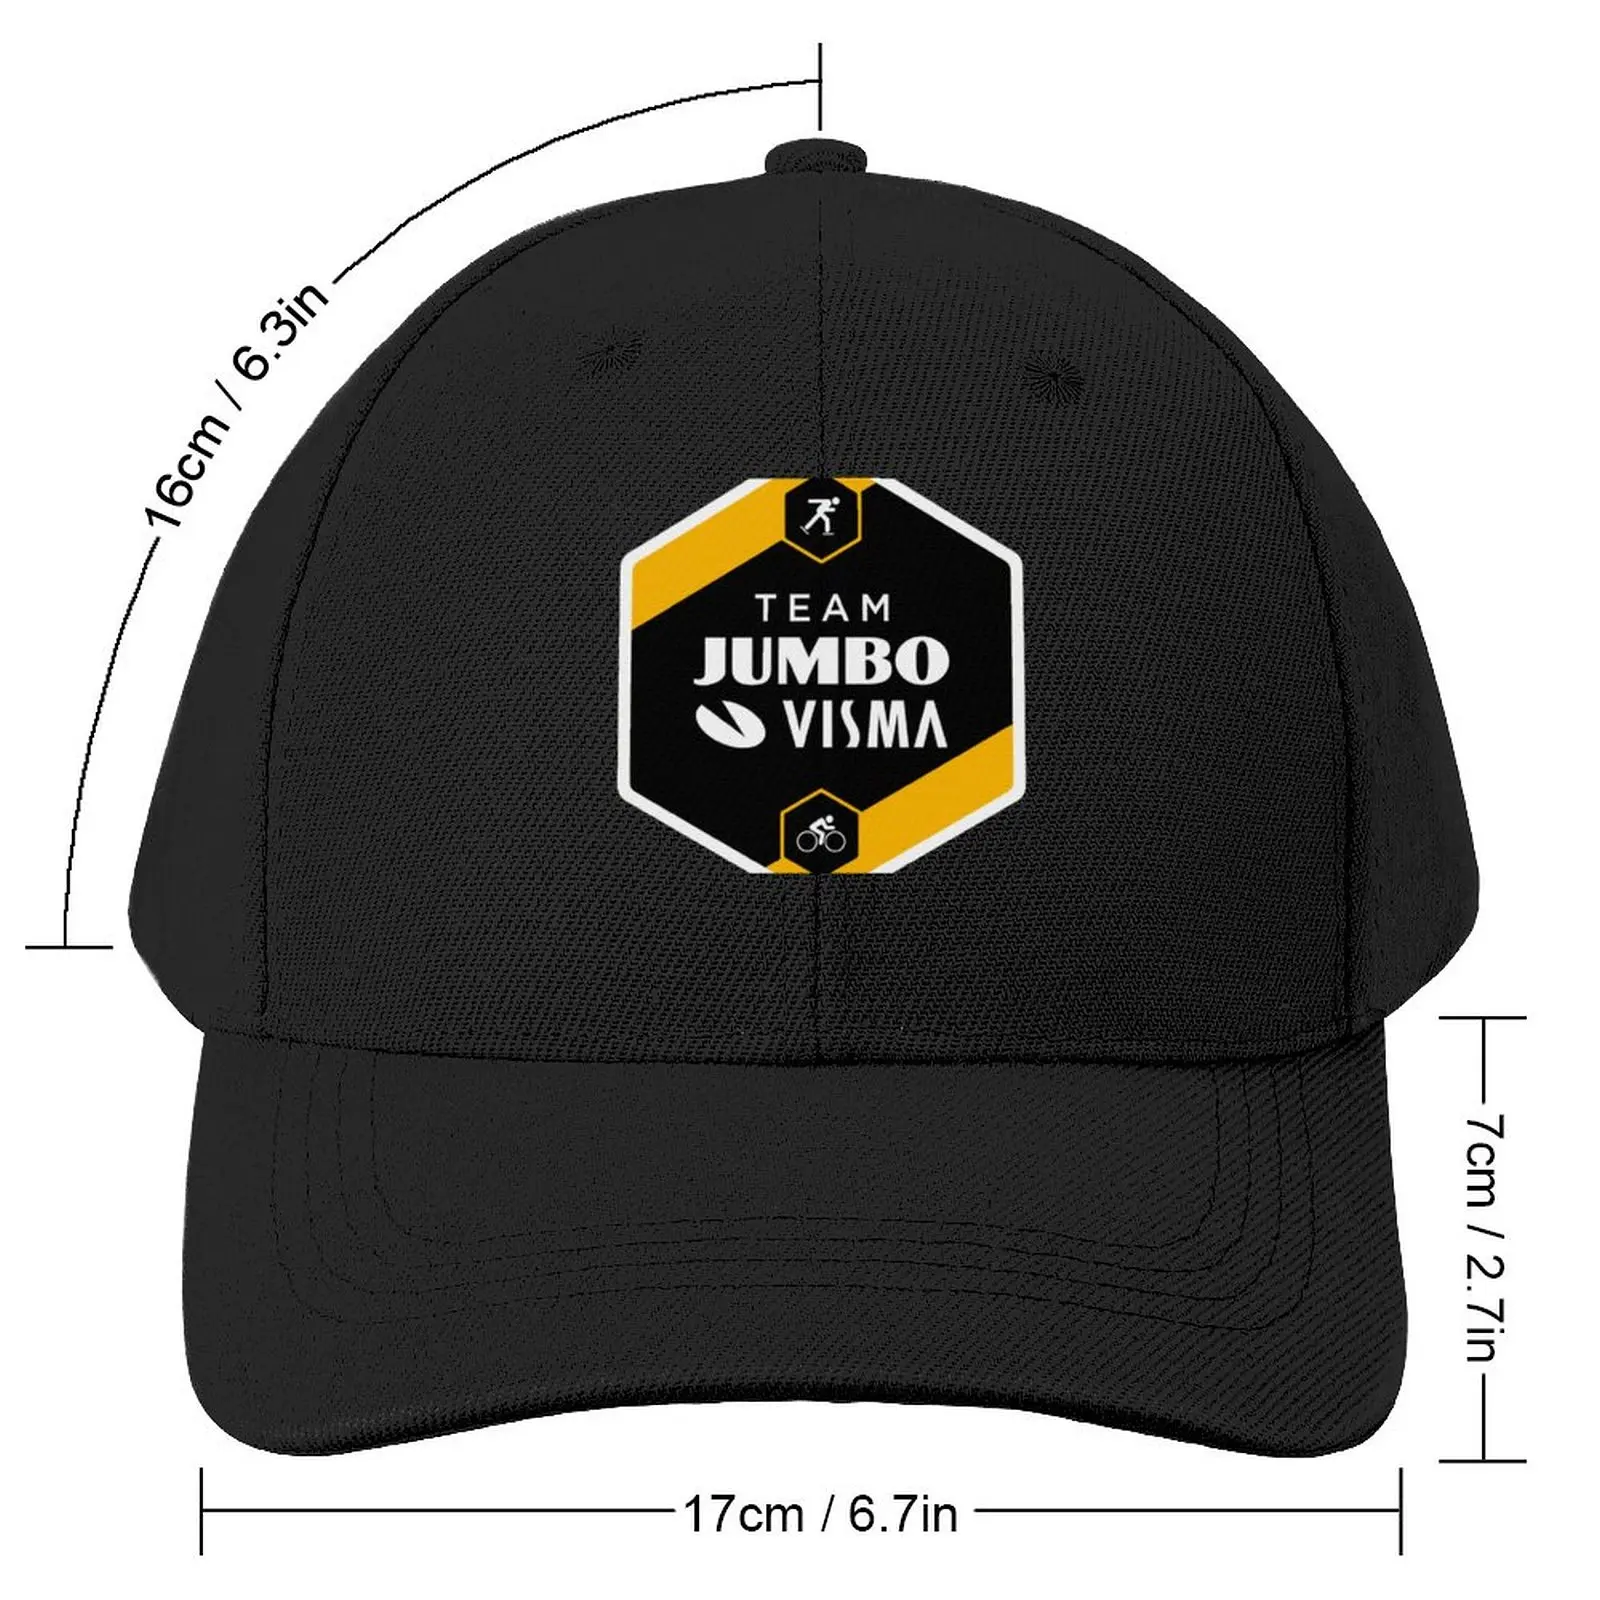 Бейсбольная кепка JUMBO VISMA Team, бейсболка с помпонами, мужские шляпы, женские кепки.